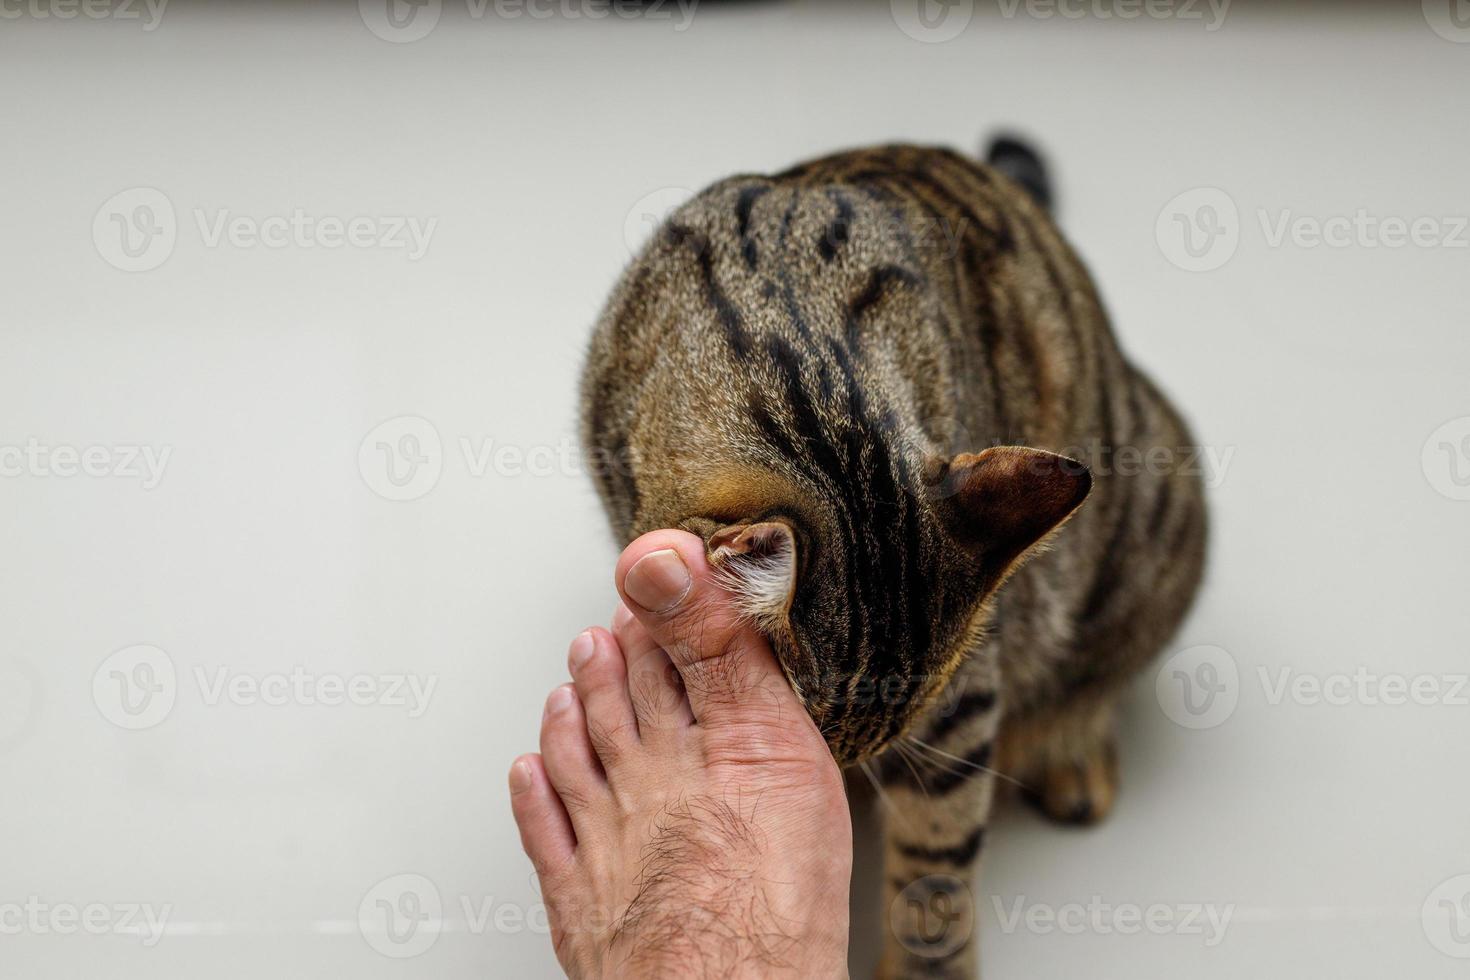 katzengesicht, das menschen die füße reibt, getigerte katze. foto